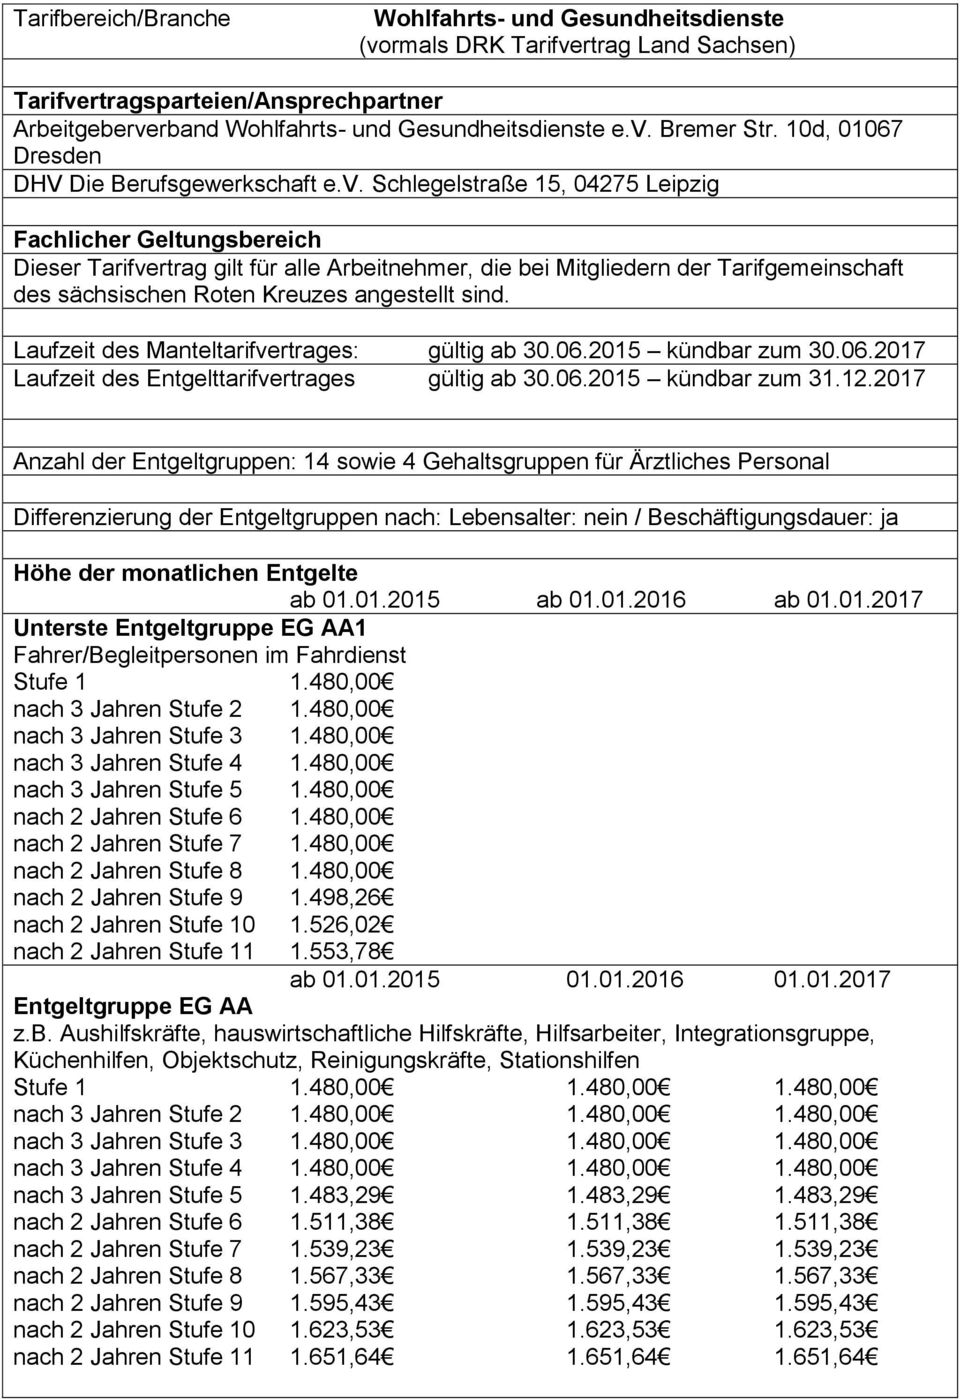 Schlegelstraße 15, 04275 Leipzig Fachlicher Geltungsbereich Dieser Tarifvertrag gilt für alle Arbeitnehmer, die bei Mitgliedern der Tarifgemeinschaft des sächsischen Roten Kreuzes angestellt sind.